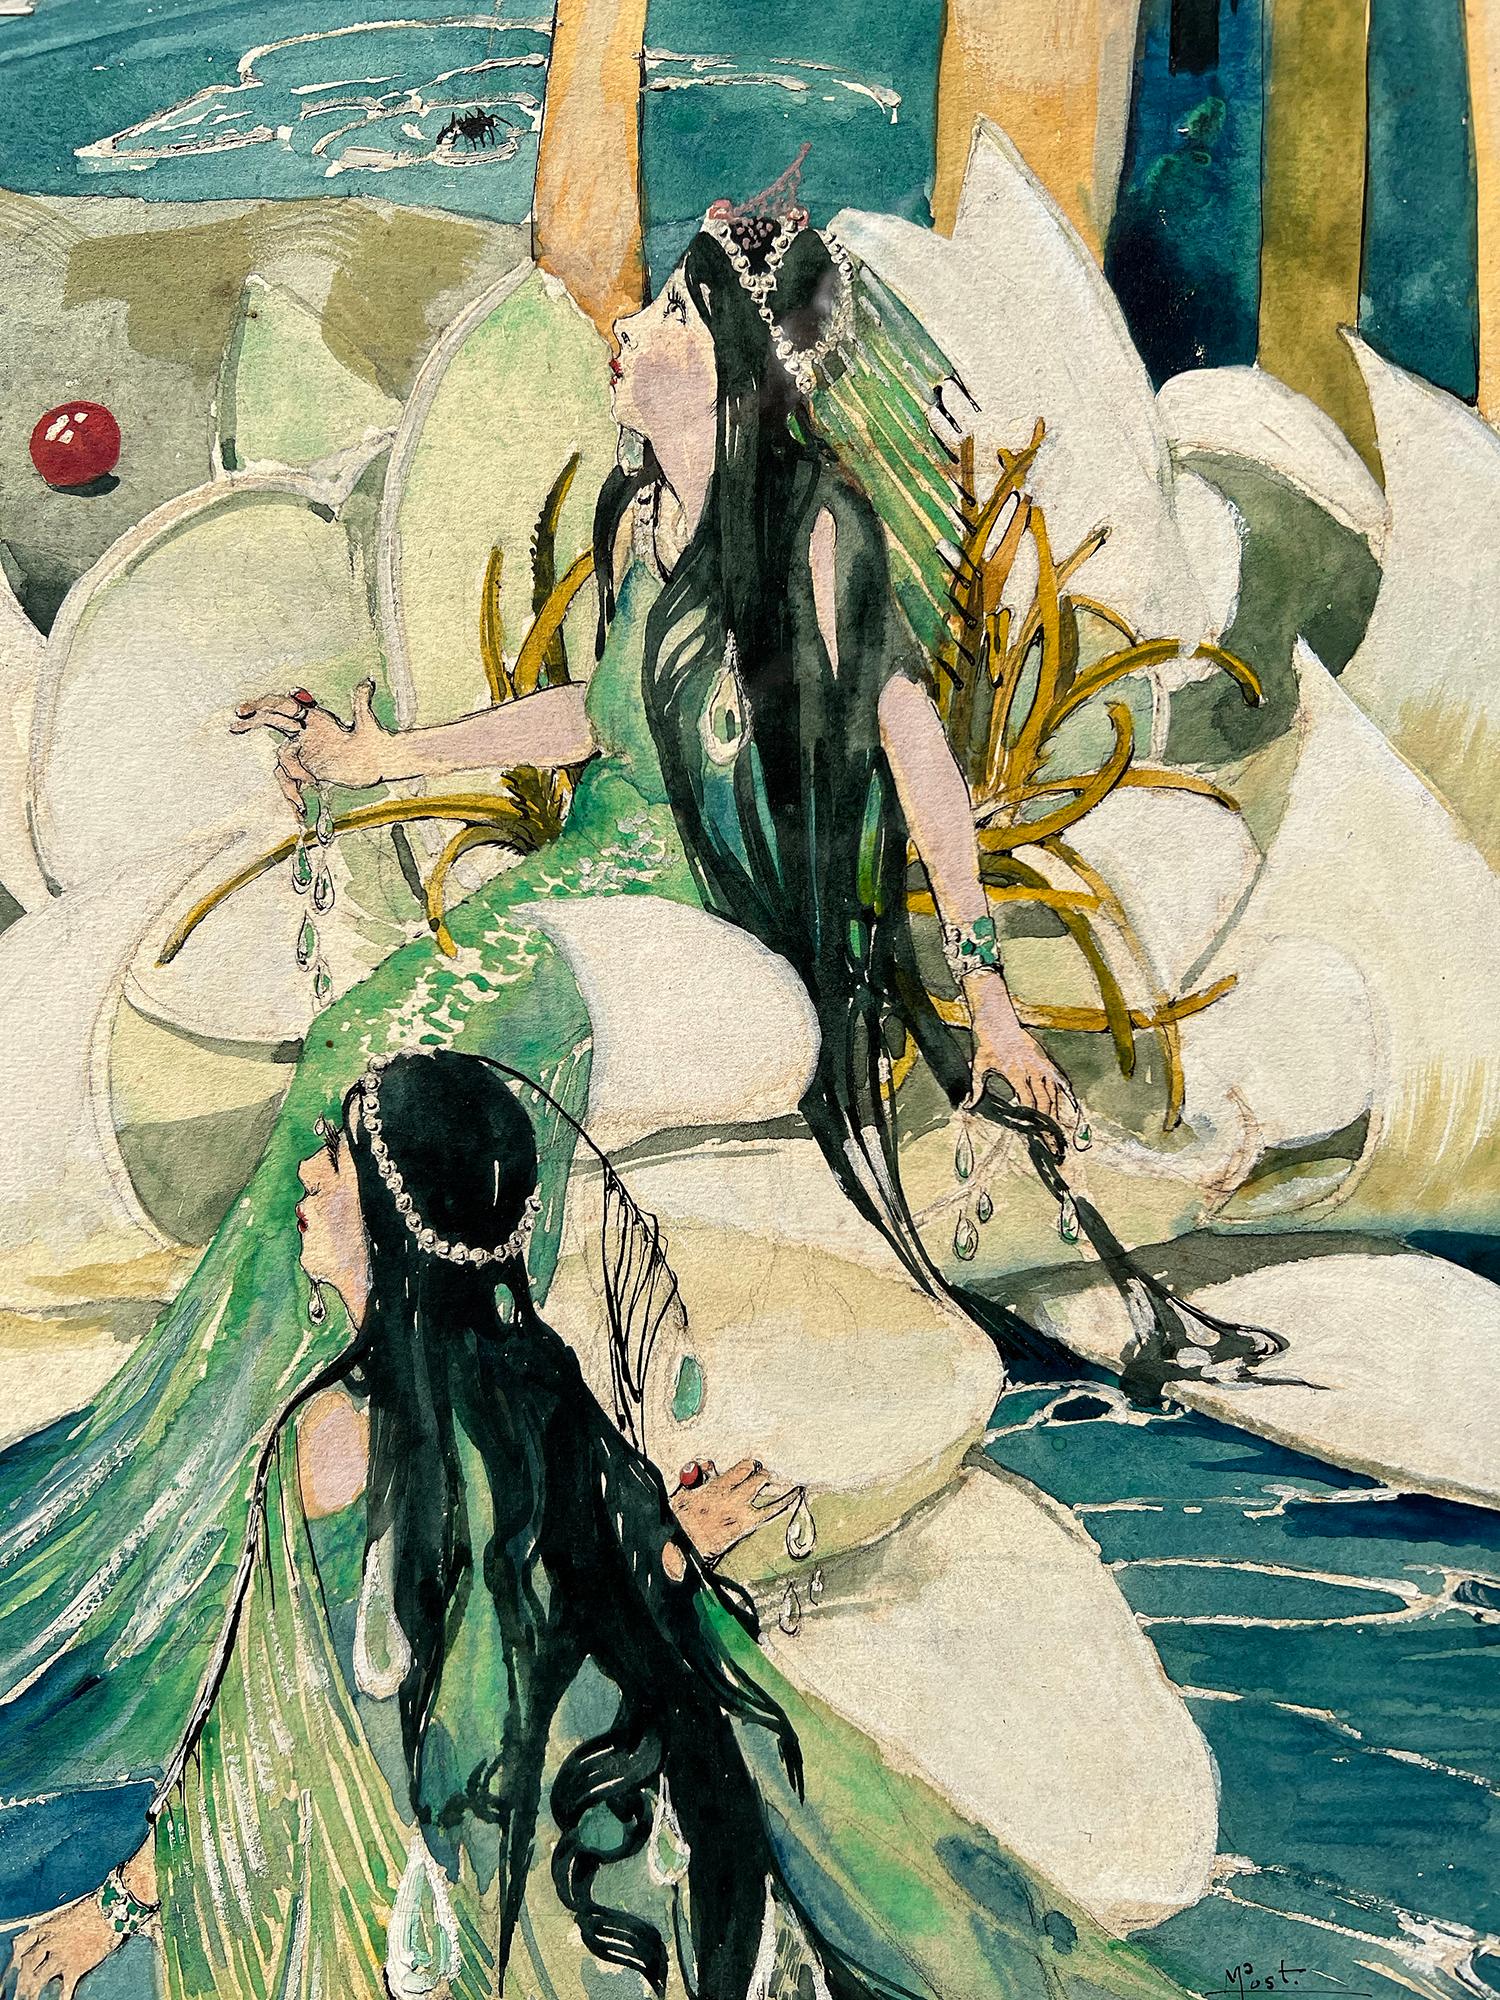 Eine Fantasy-Illustration der Illustratorin May Audubon Post aus der Jahrhundertwende zeigt eine charmante Fee mit ausgebreiteten Flügeln, die sich auf einem Lilienstängel ausruht. Mit einer behelfsmäßigen Angelrute und einer Spinne als Köder wartet